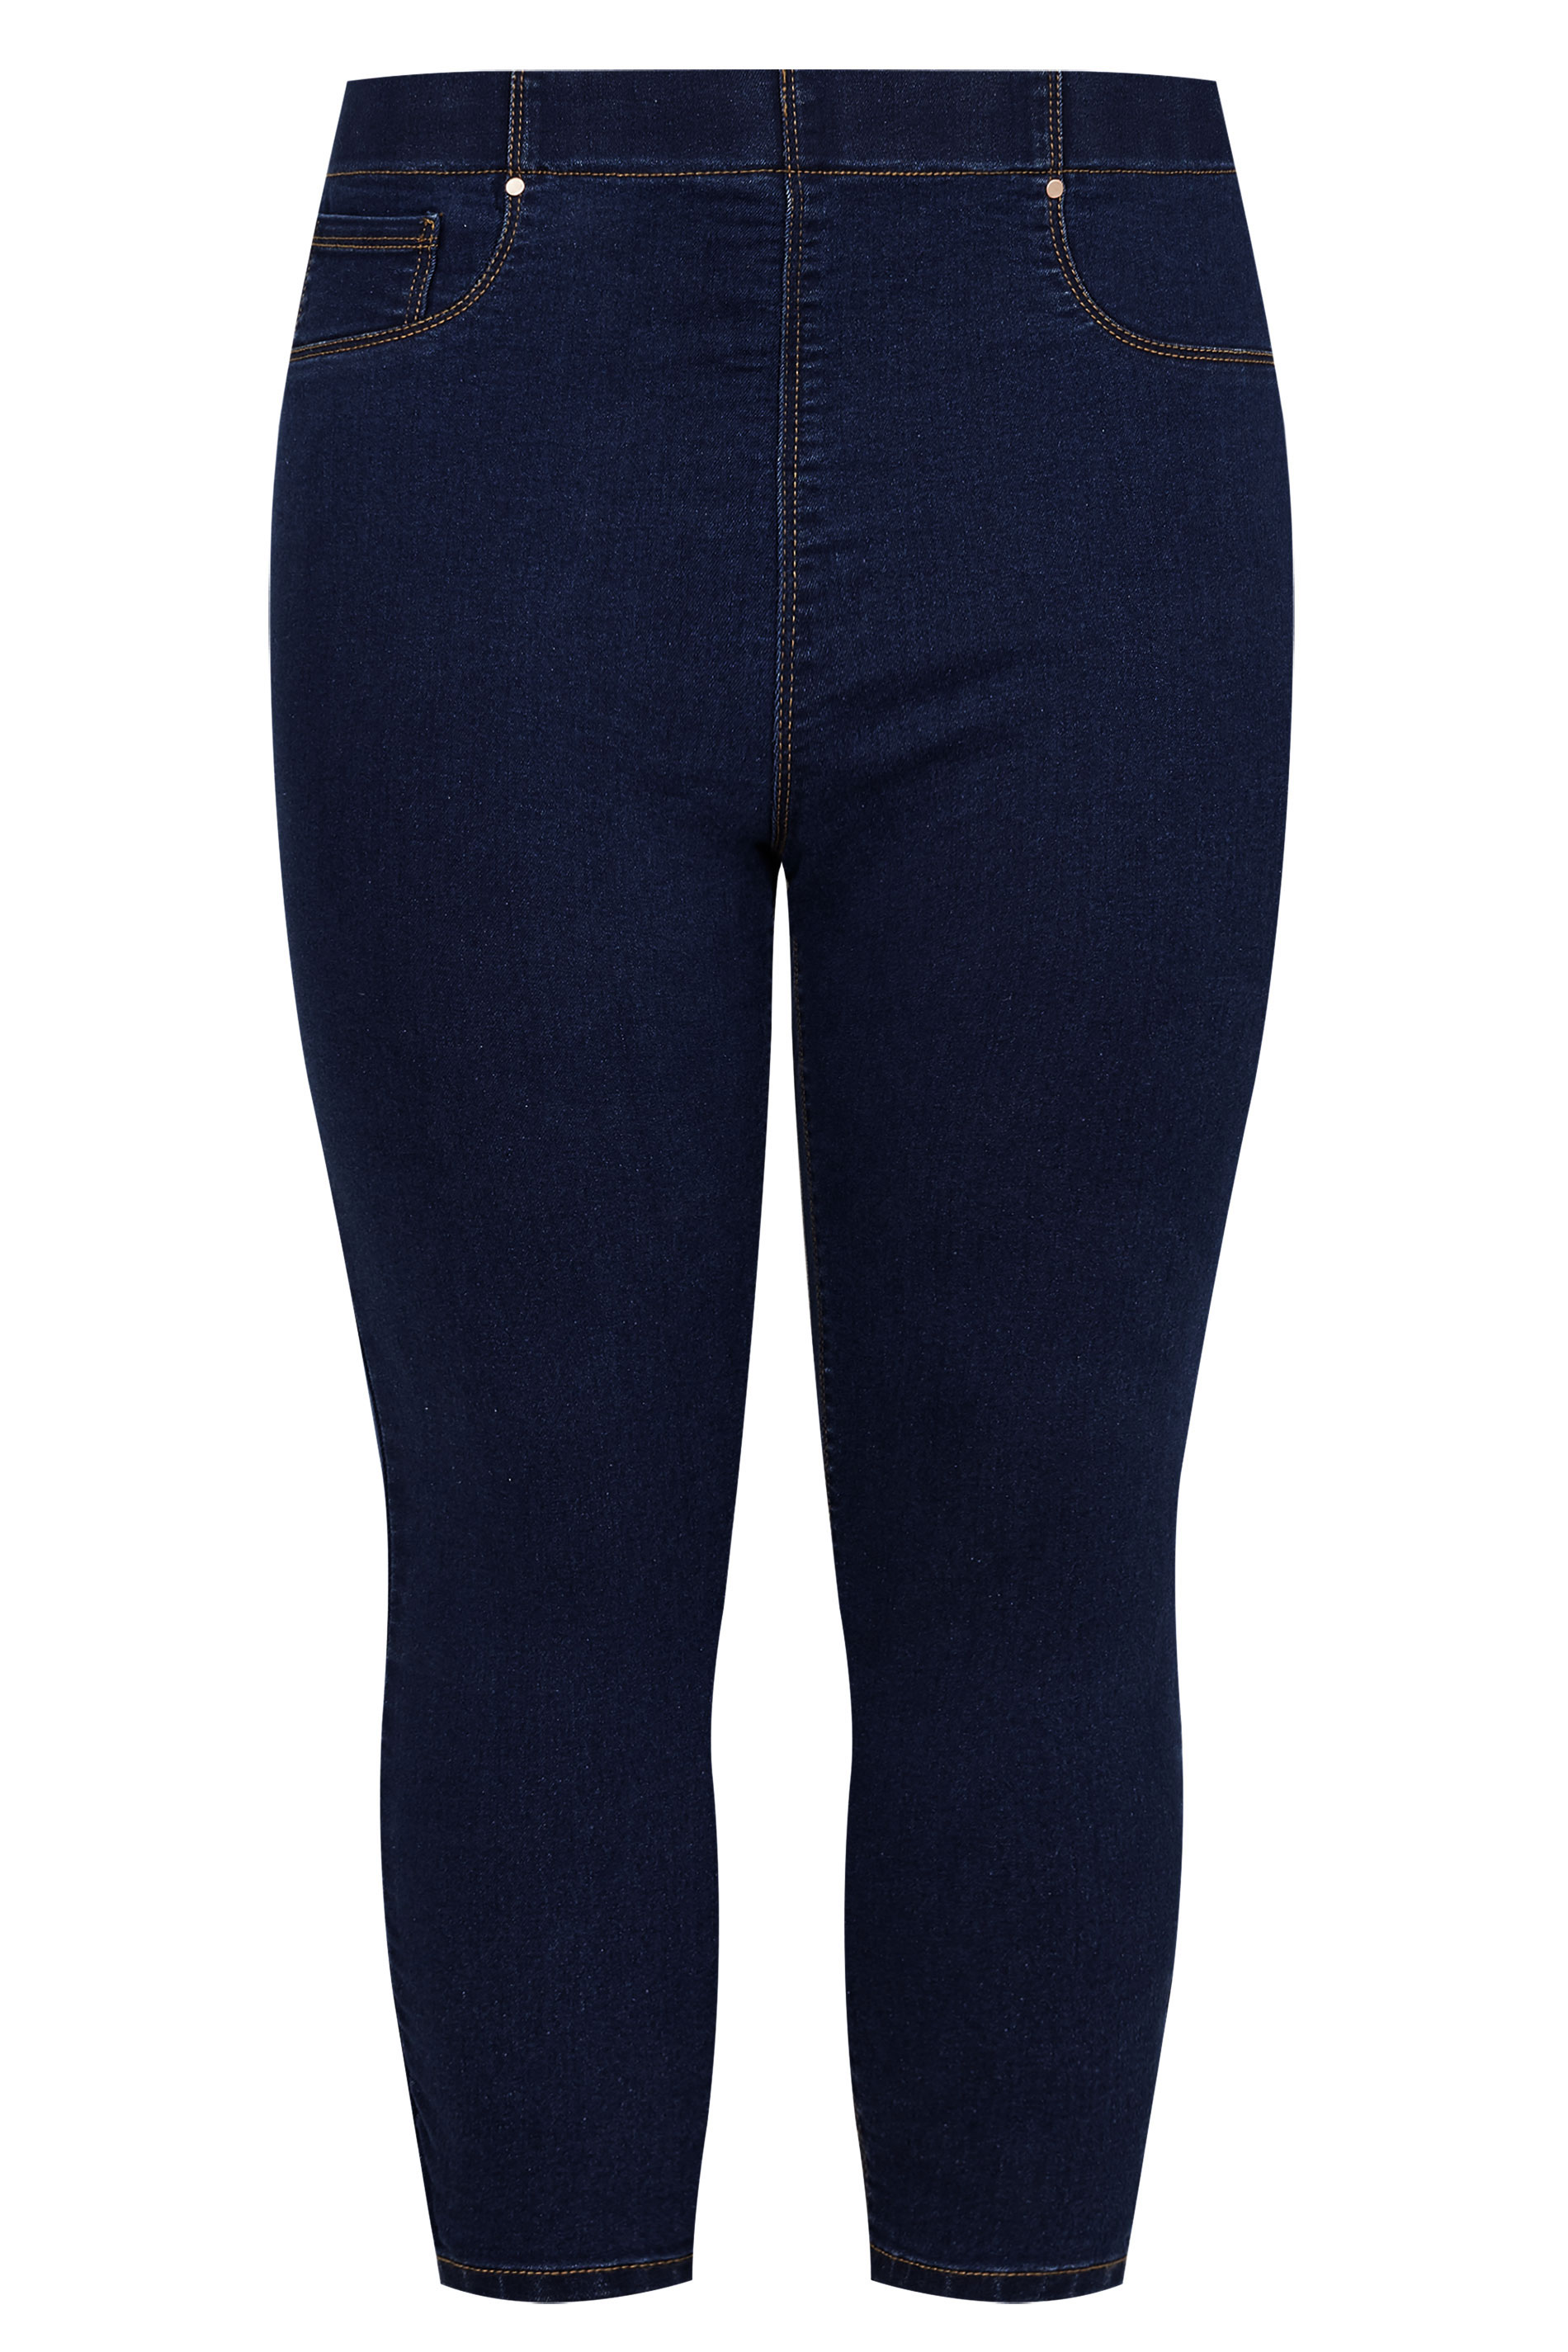 Plus Size Indigo Blue Cropped JENNY Jeggings | Yours Clothing  3